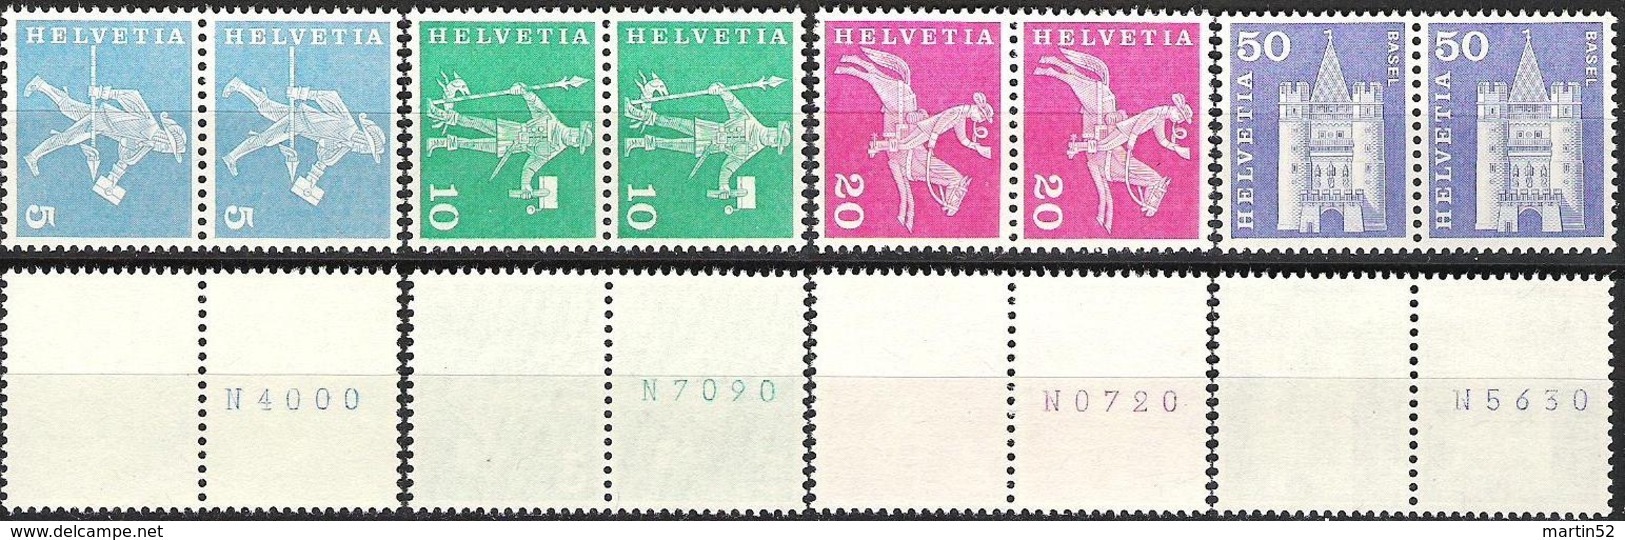 Schweiz Suisse 1960: Rollen-Rouleaux-Coil Zu 355/363R Mi 696/704R Yv 643/65 Avec+sans Numéro (se-tenant)(Zu CHF 38.50) - Coil Stamps